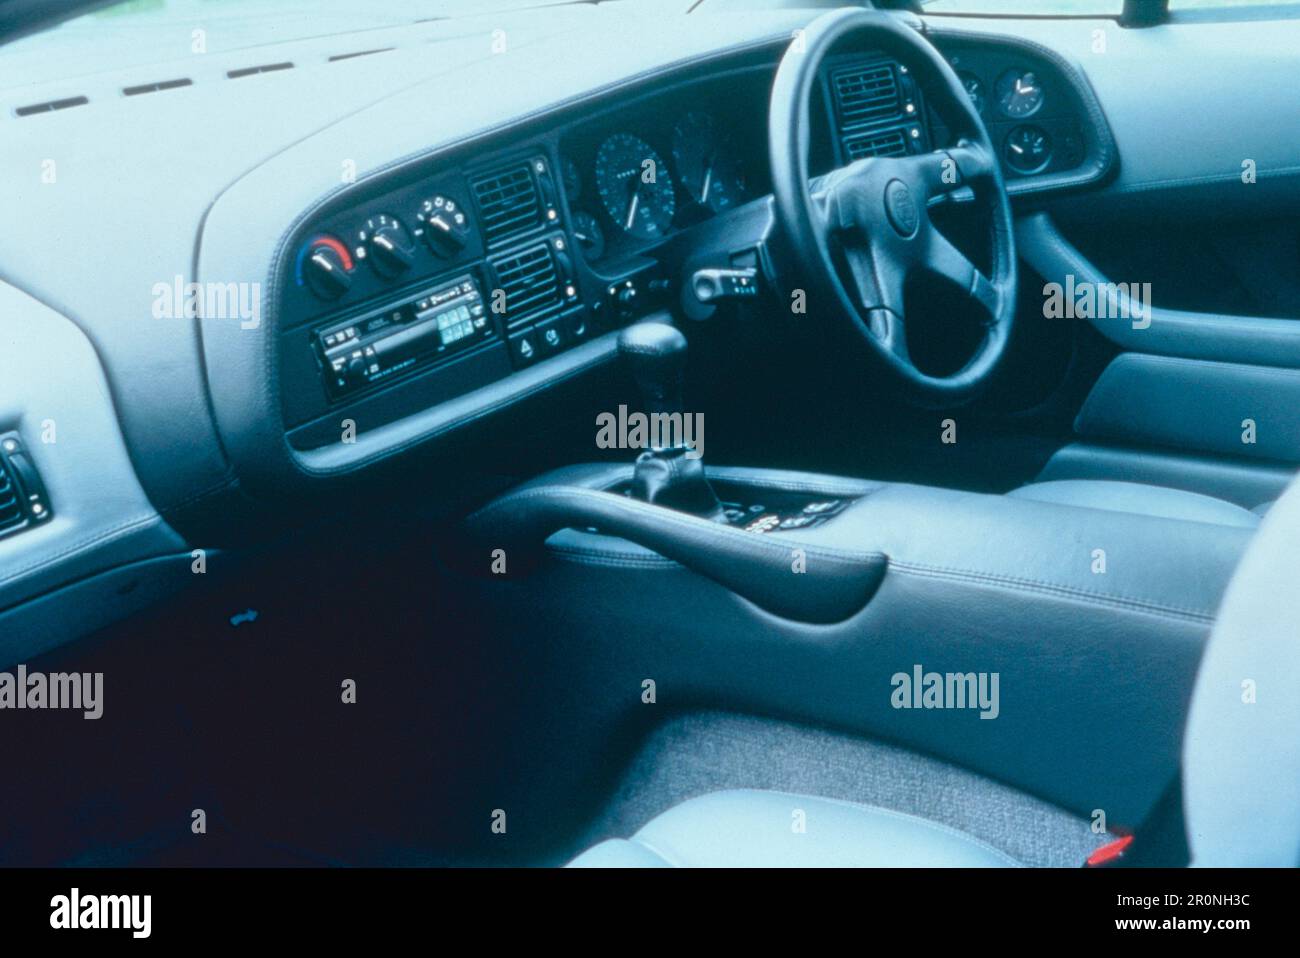 Vue intérieure de la voiture Jaguar XJ220, Royaume-Uni 1990s Banque D'Images